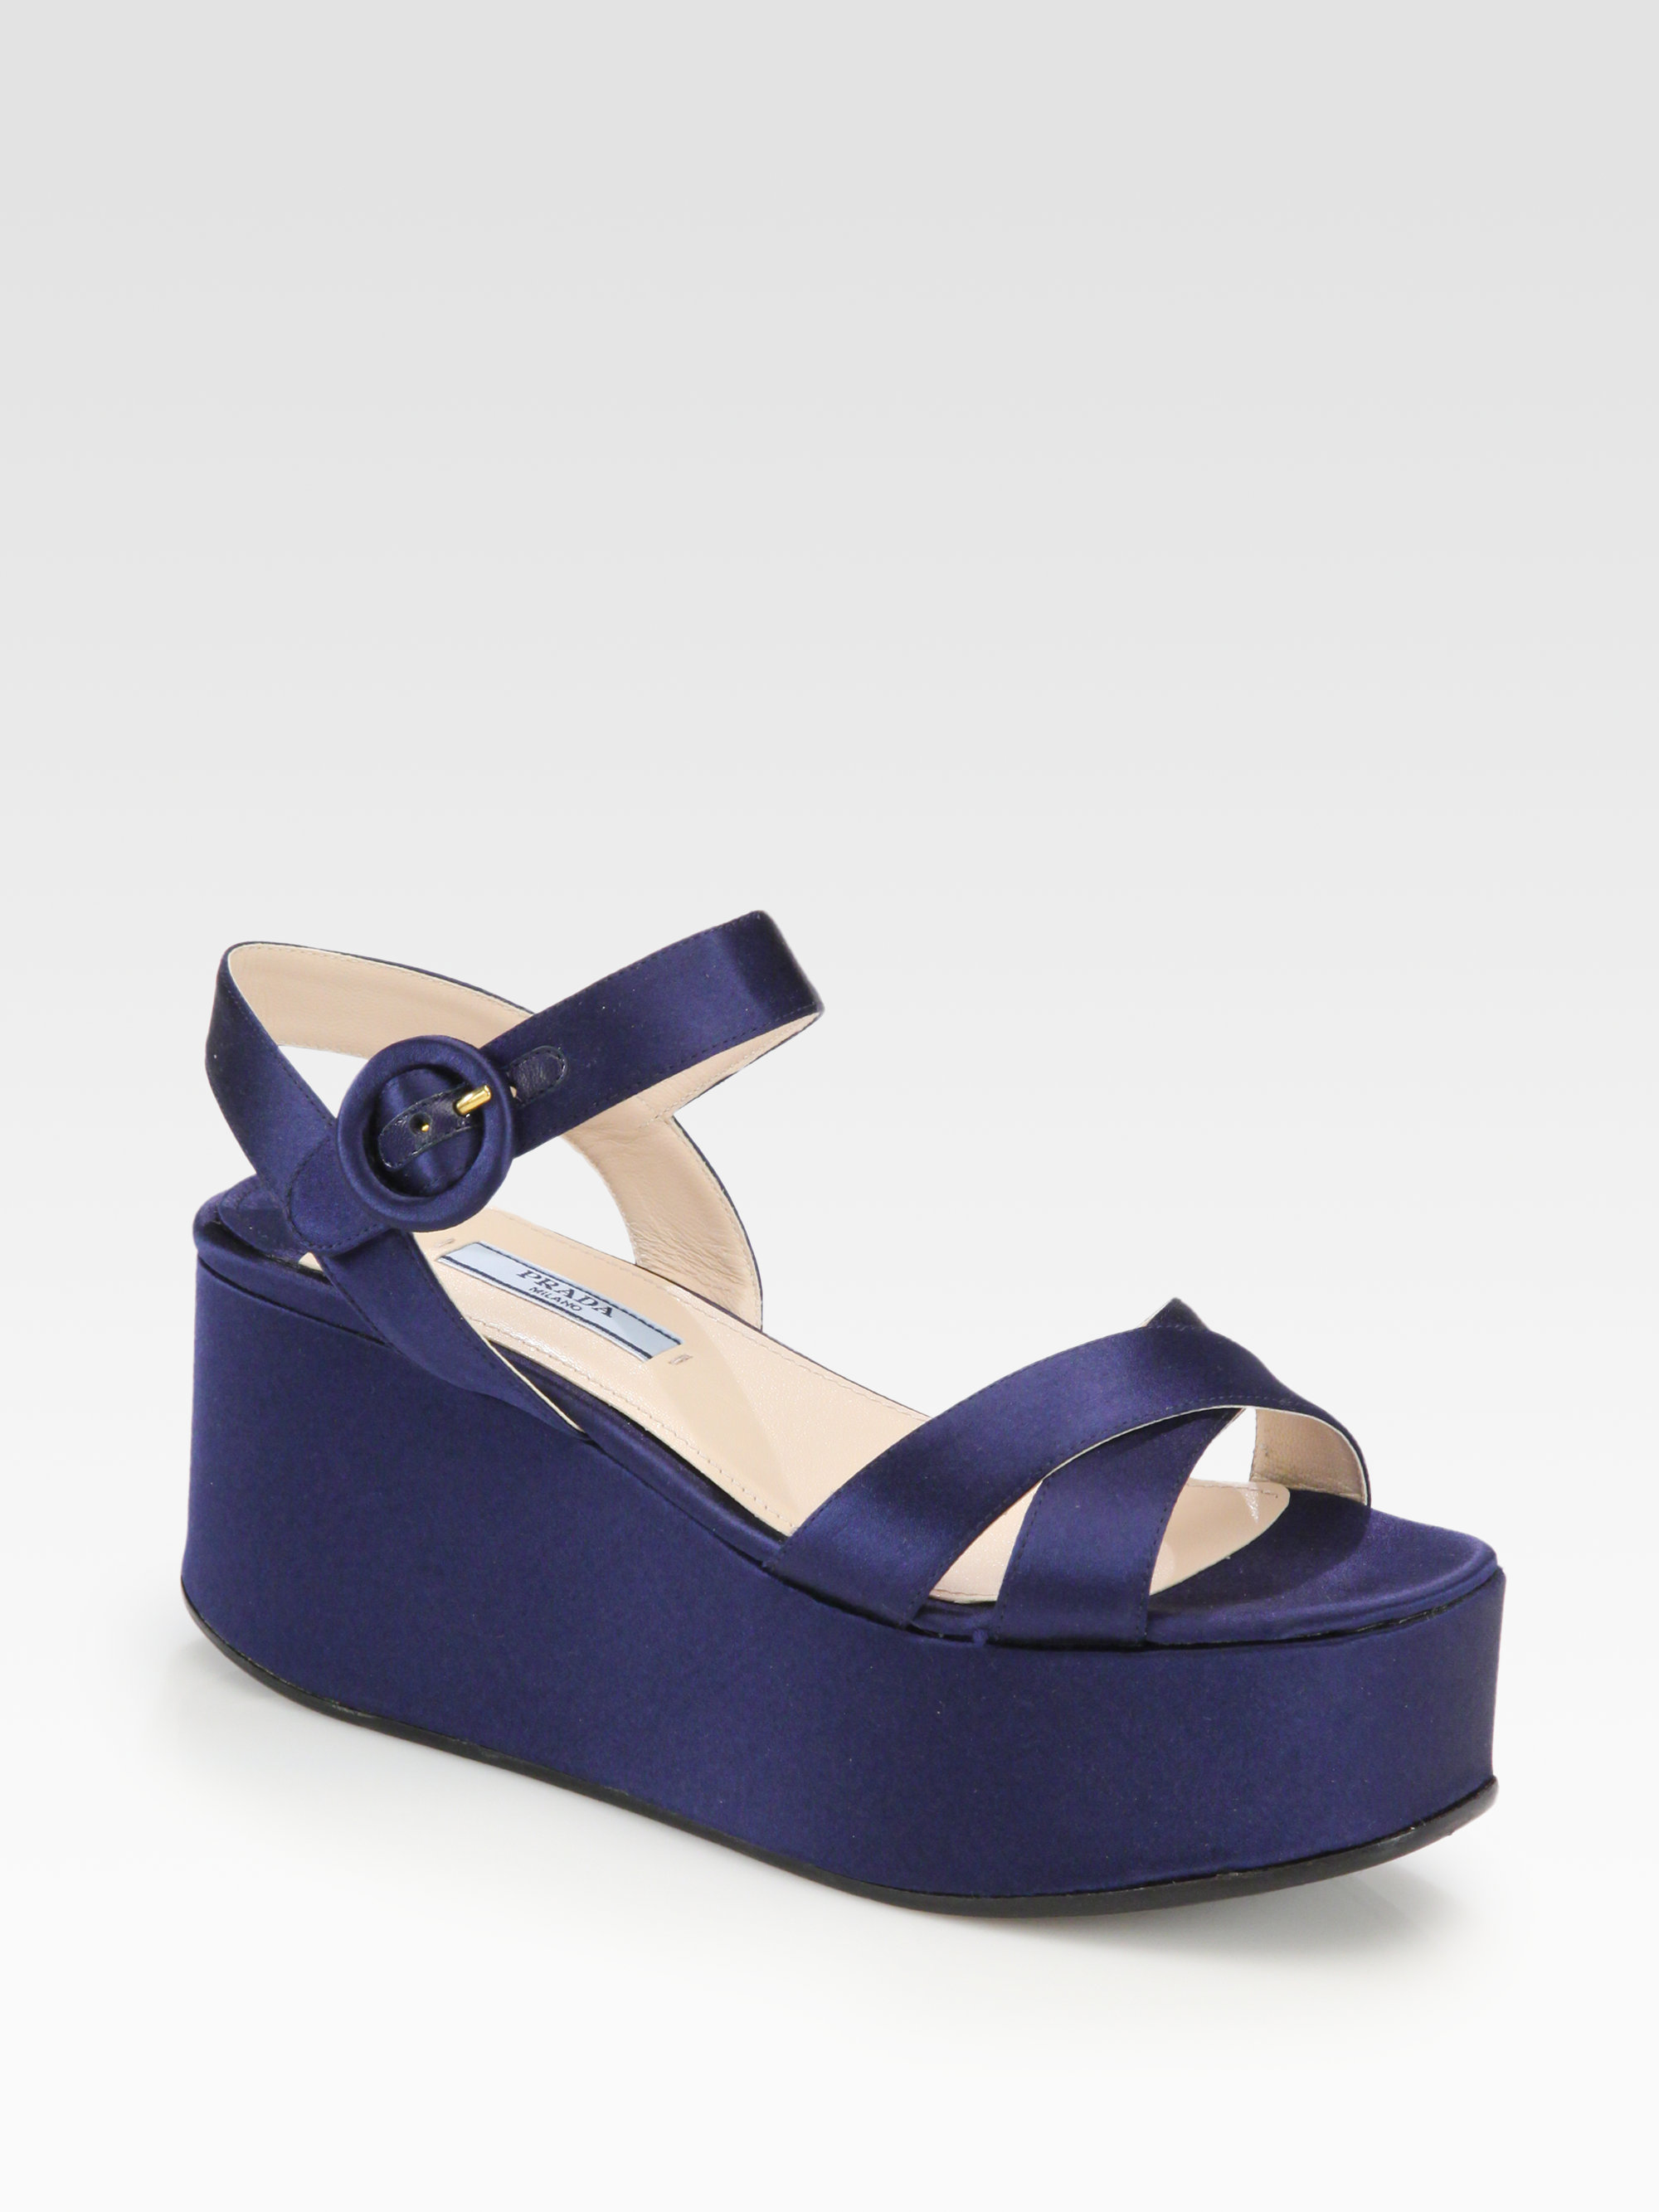 Prada Satin Platform Wedge Sandals in Blue | Lyst